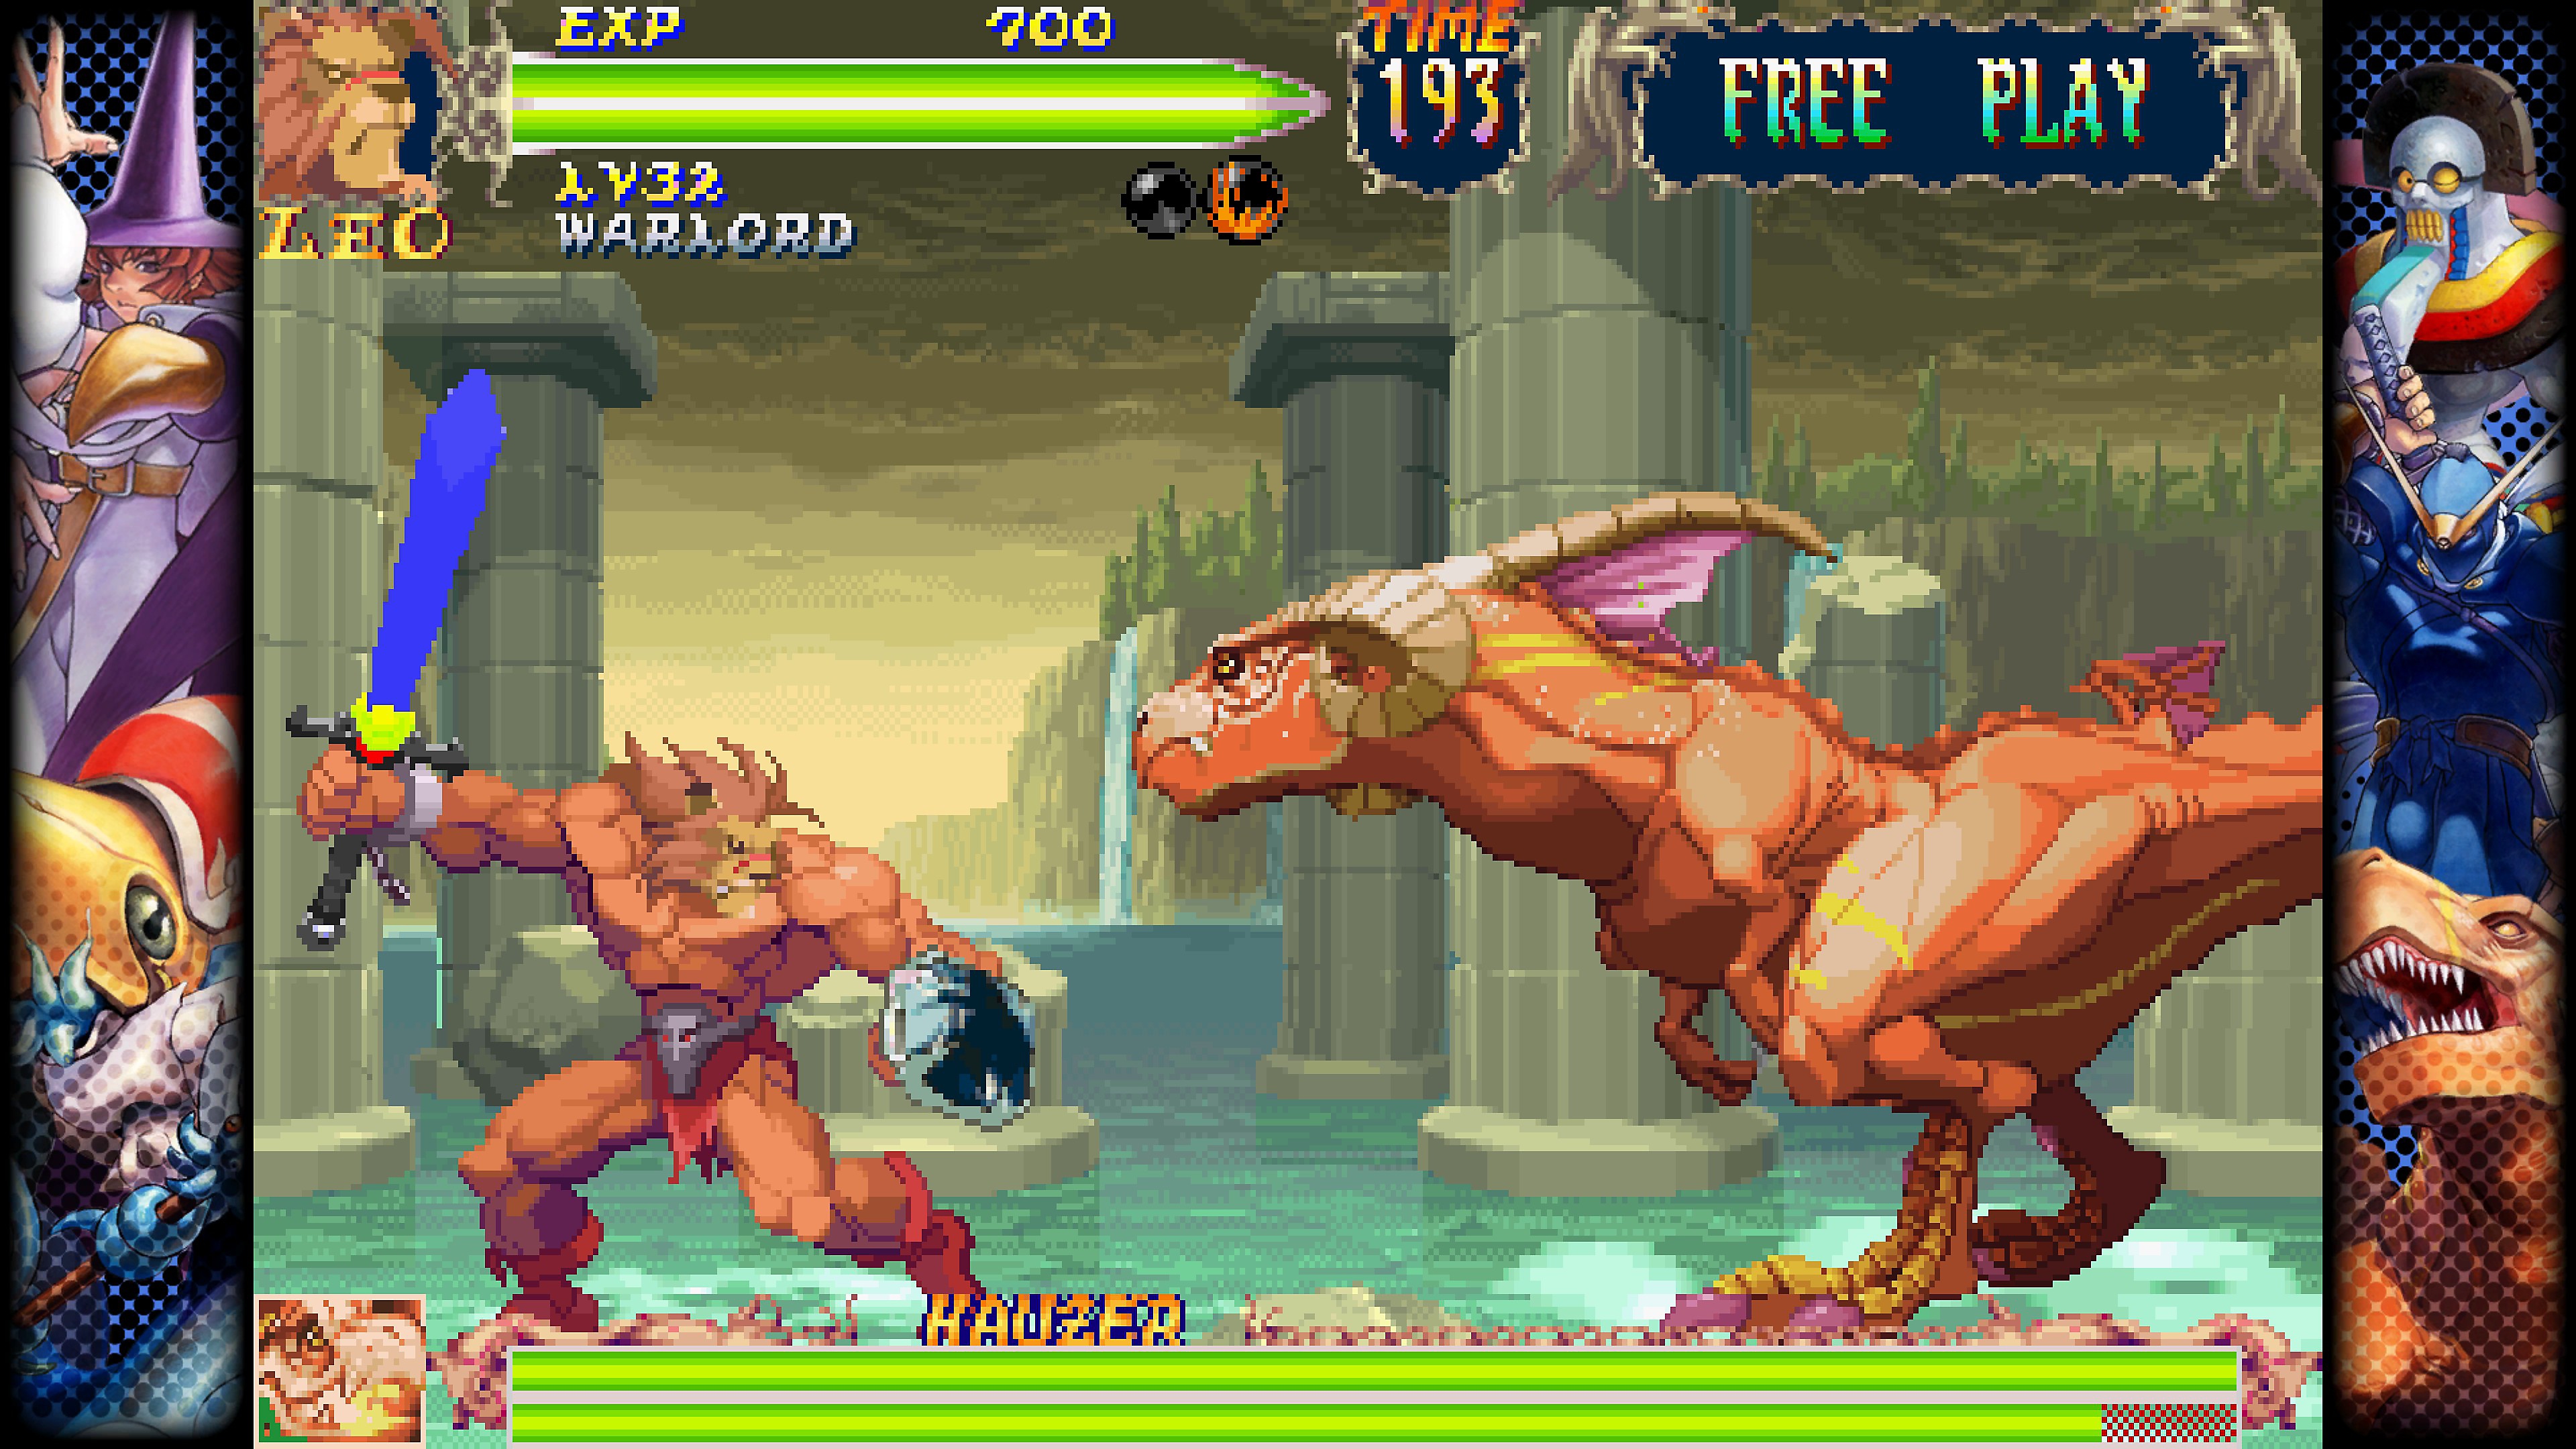 Capcom Fighting Collection – skärmbild på en strid mellan två karaktärer